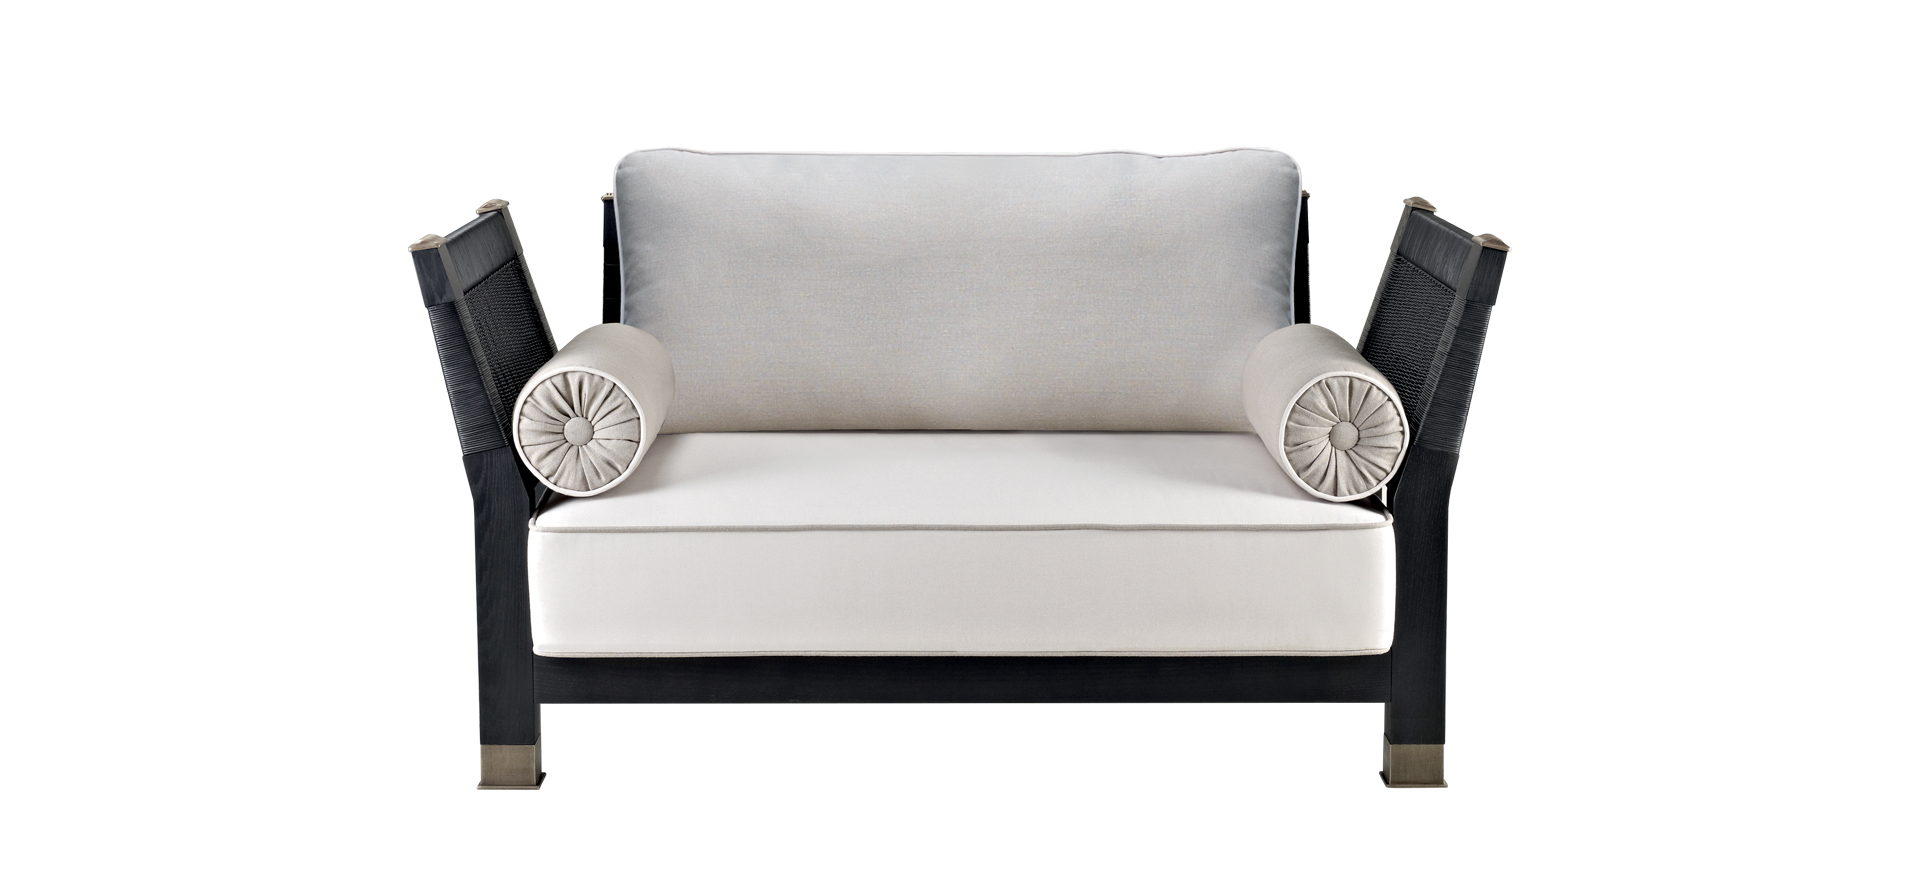 Moltrasio&nbsp;— деревянный диван для улицы с бронзовыми ножками и деталями из каталога мебели для улицы Promemoria | Promemoria